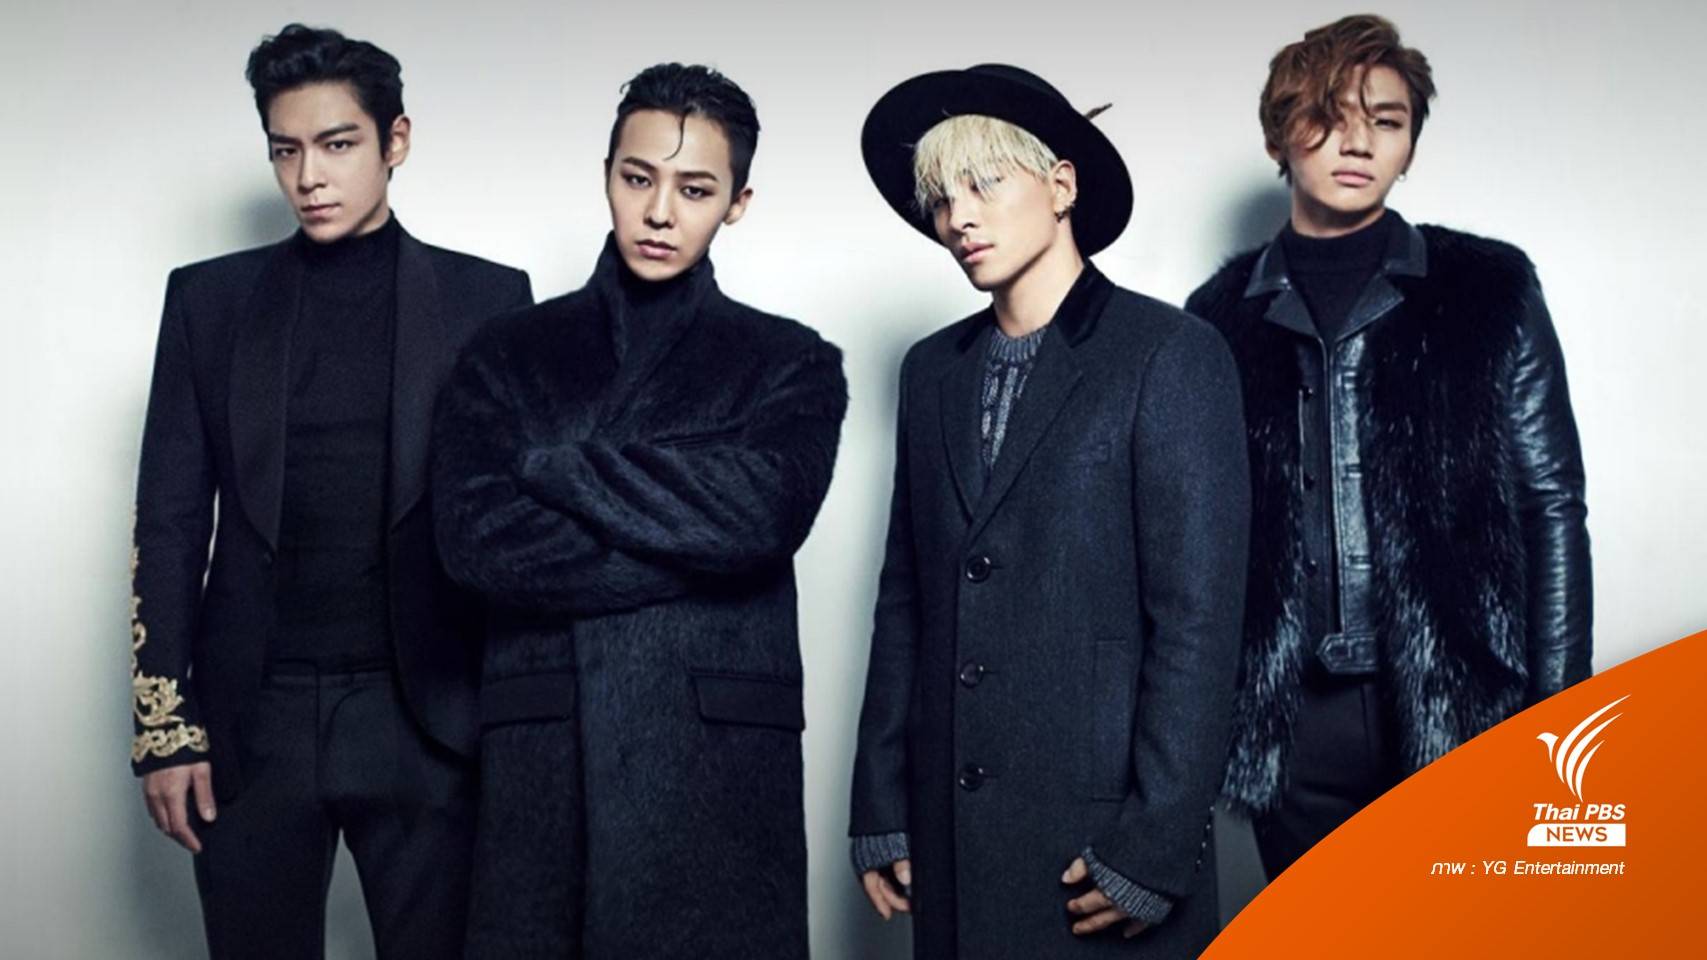 สิ้นสุดการรอคอย! YG ประกาศ BIGBANG เตรียมคัมแบ็กในรอบ 4 ปี